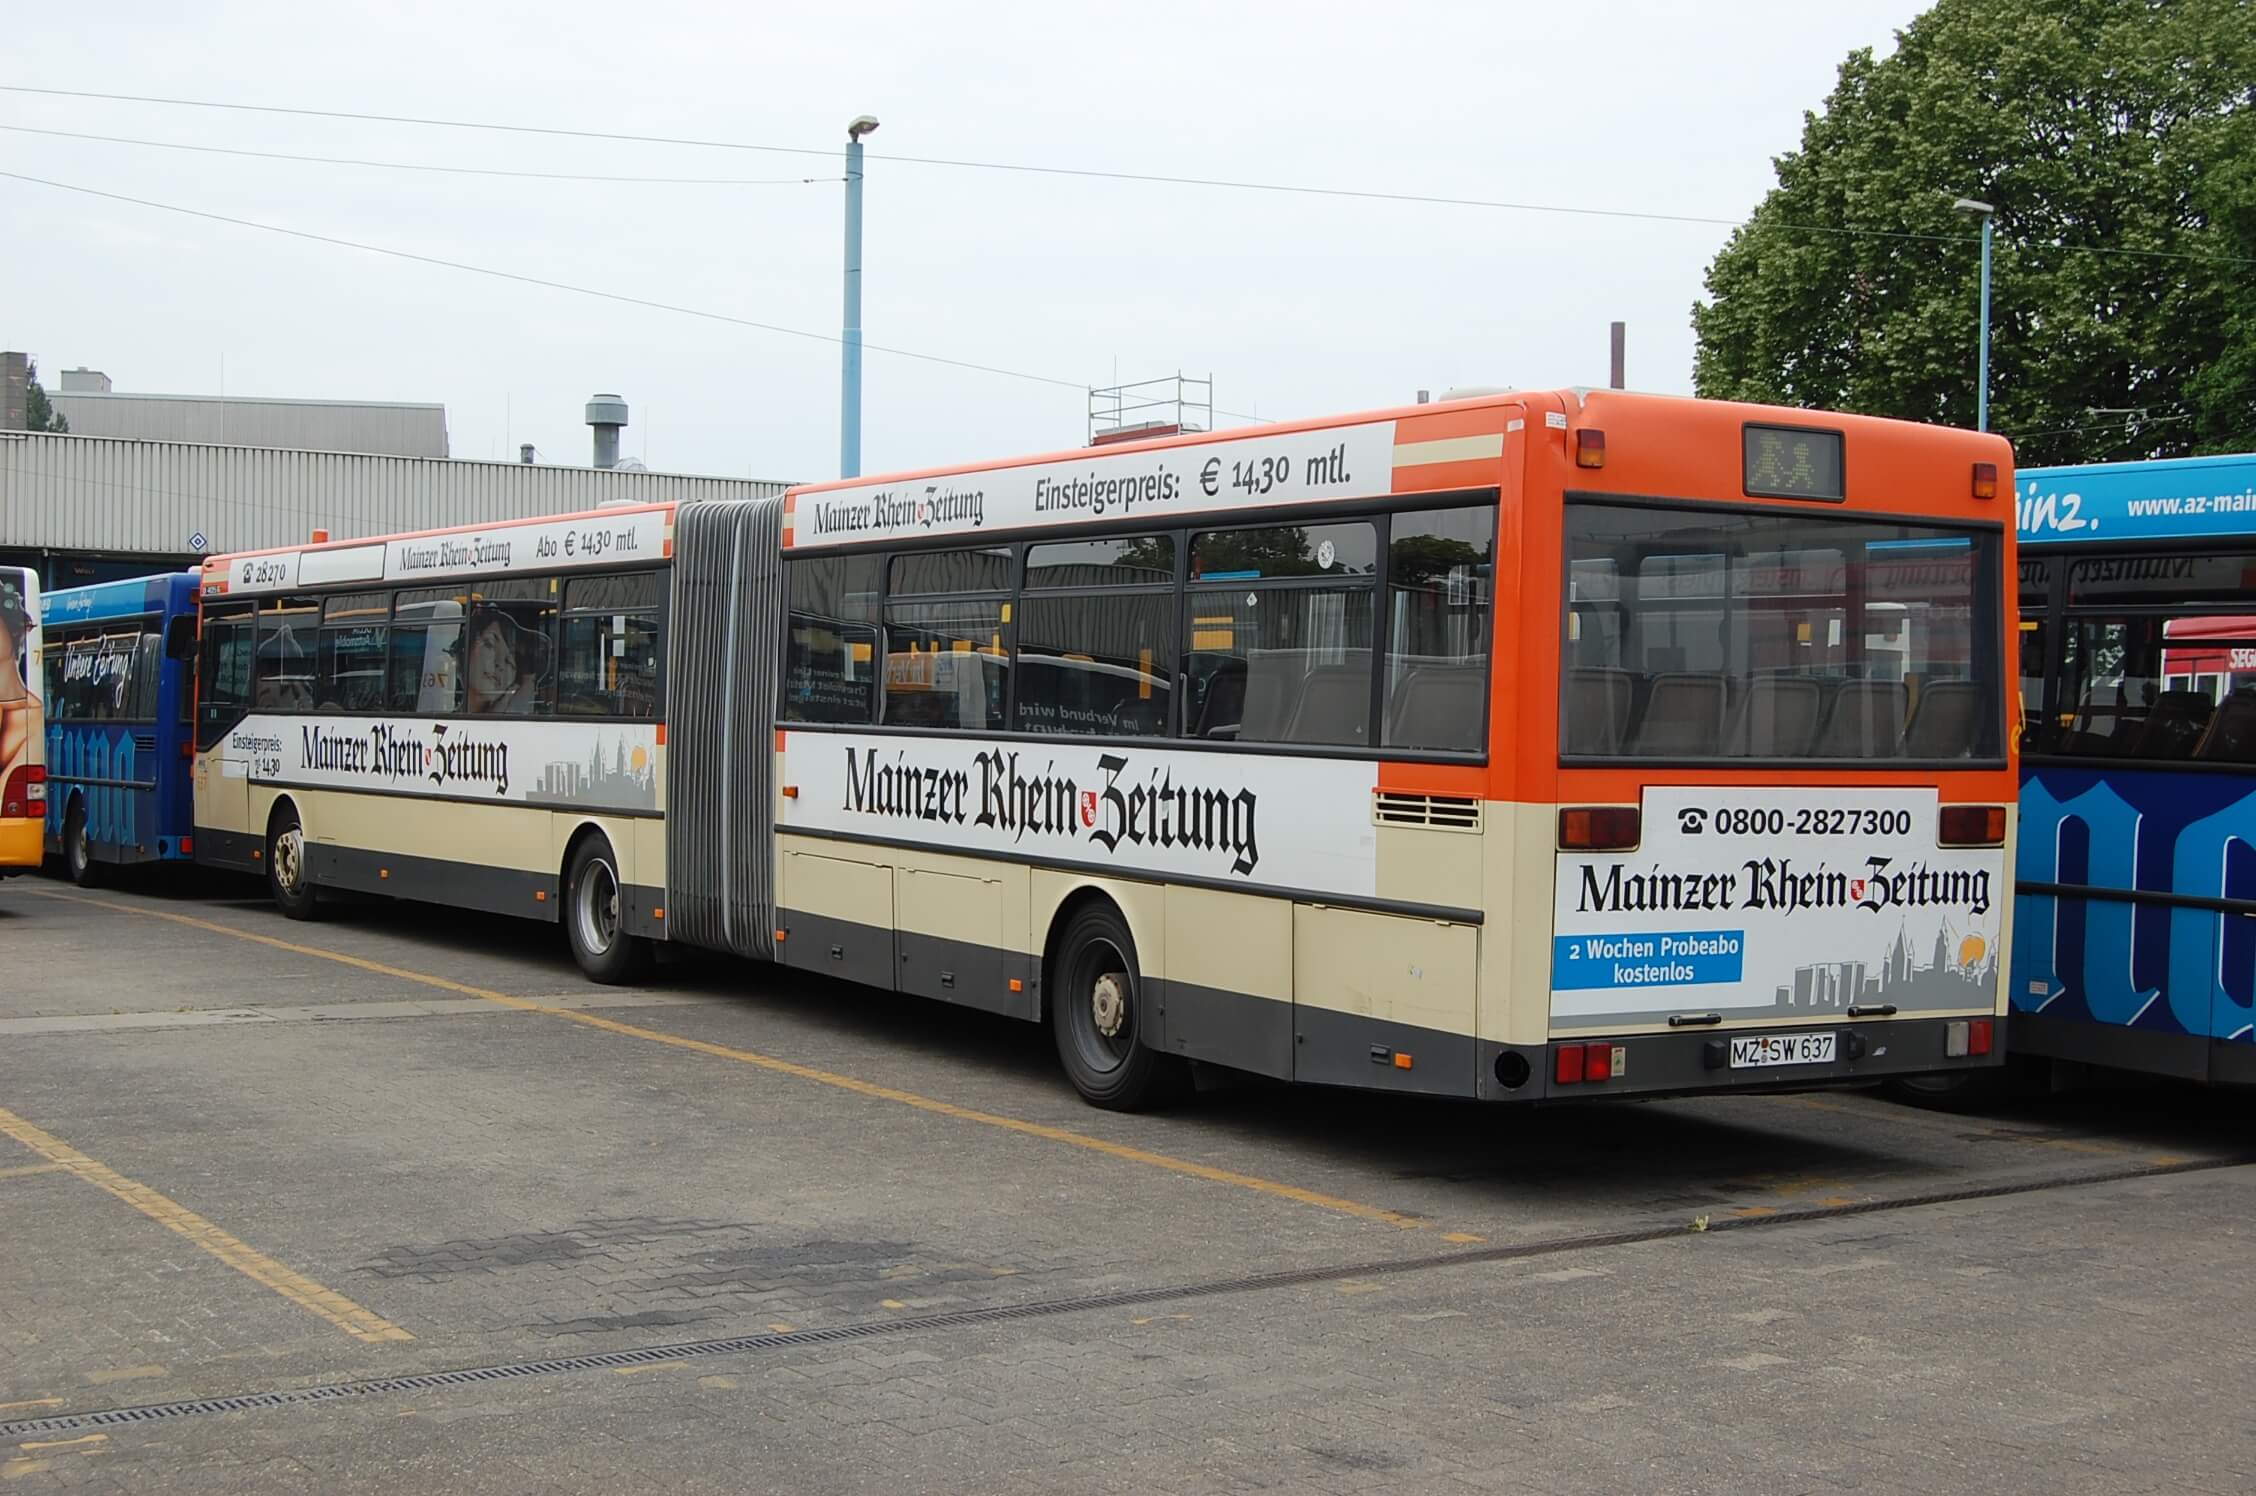 Bus 637 - Danke an Straßenbahnfreunde Mainz e.V für die Bilder